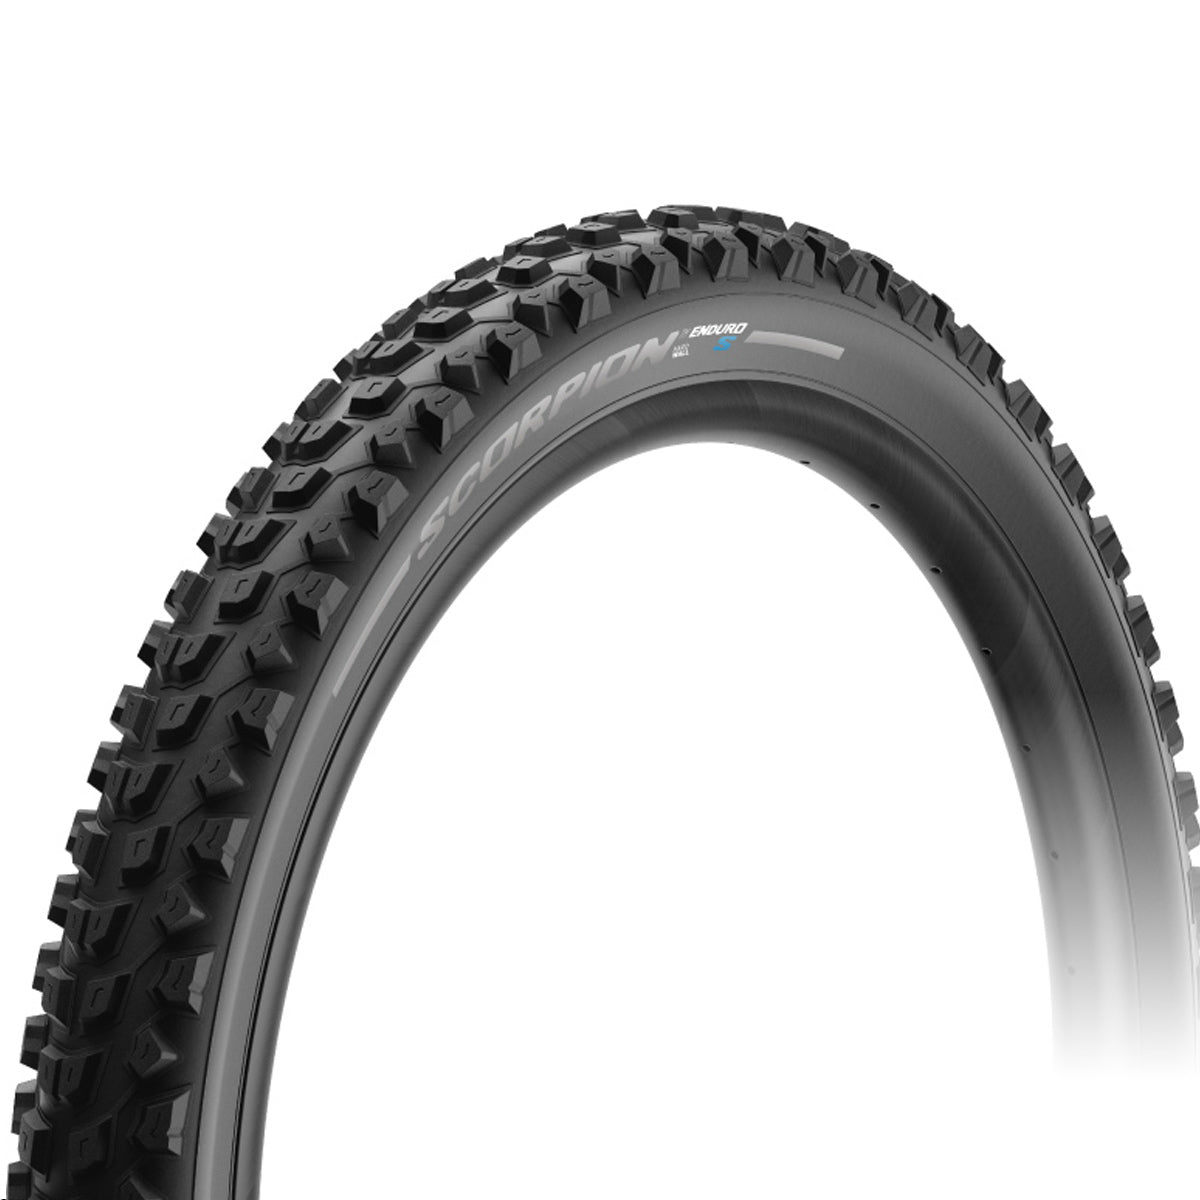 Pirelli Scorpion Enduro S tyre - 29x2.60